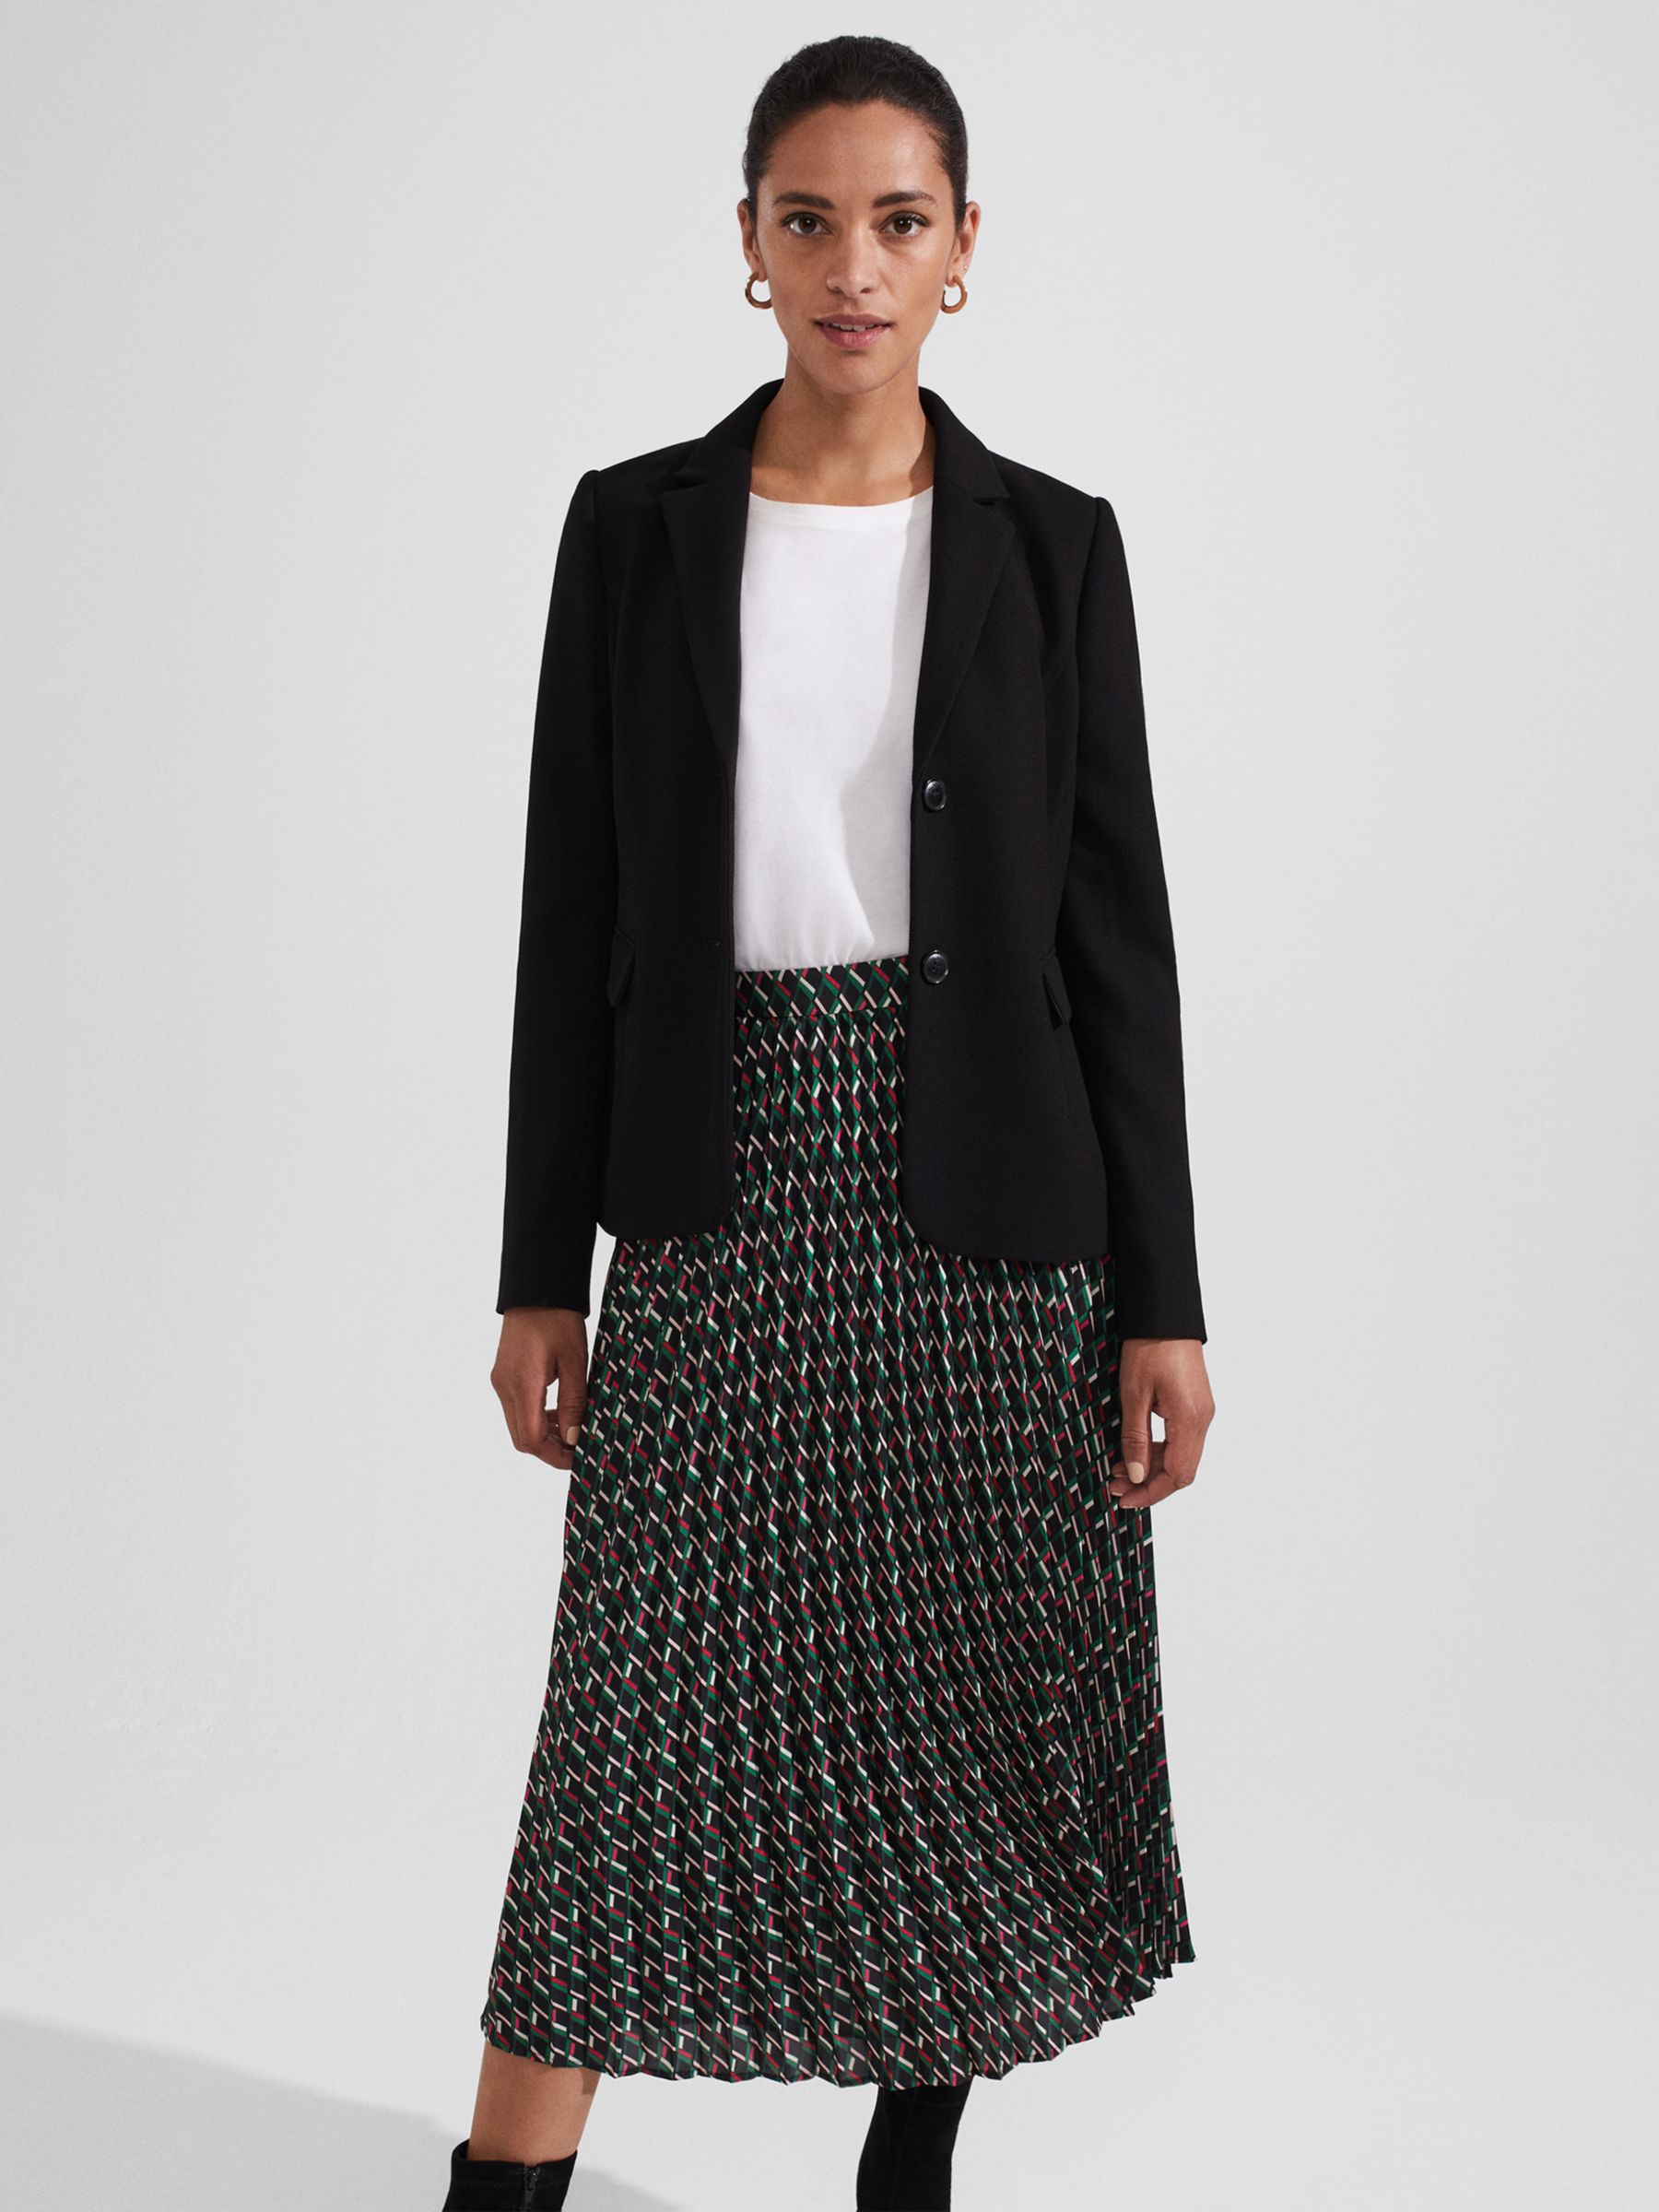 Buy Hobbs Kayla Pleated Midi Skirt, Multi Online at johnlewis.com